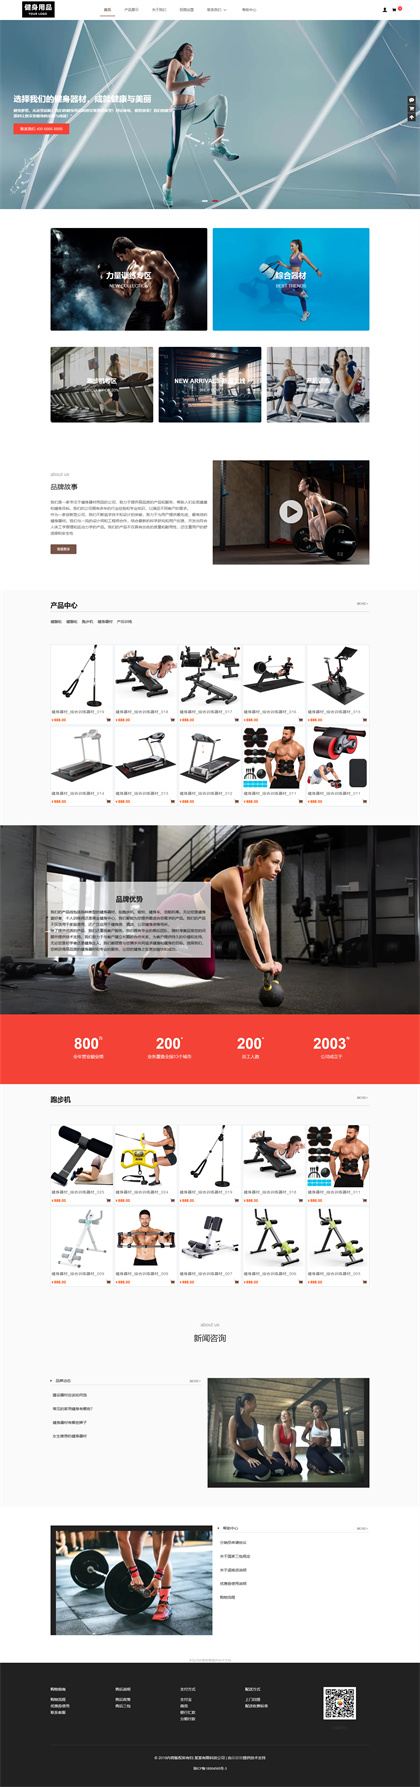 健身器材-健身用品-健身设备-运动用品-运动器材商城网站模板网站模板图片